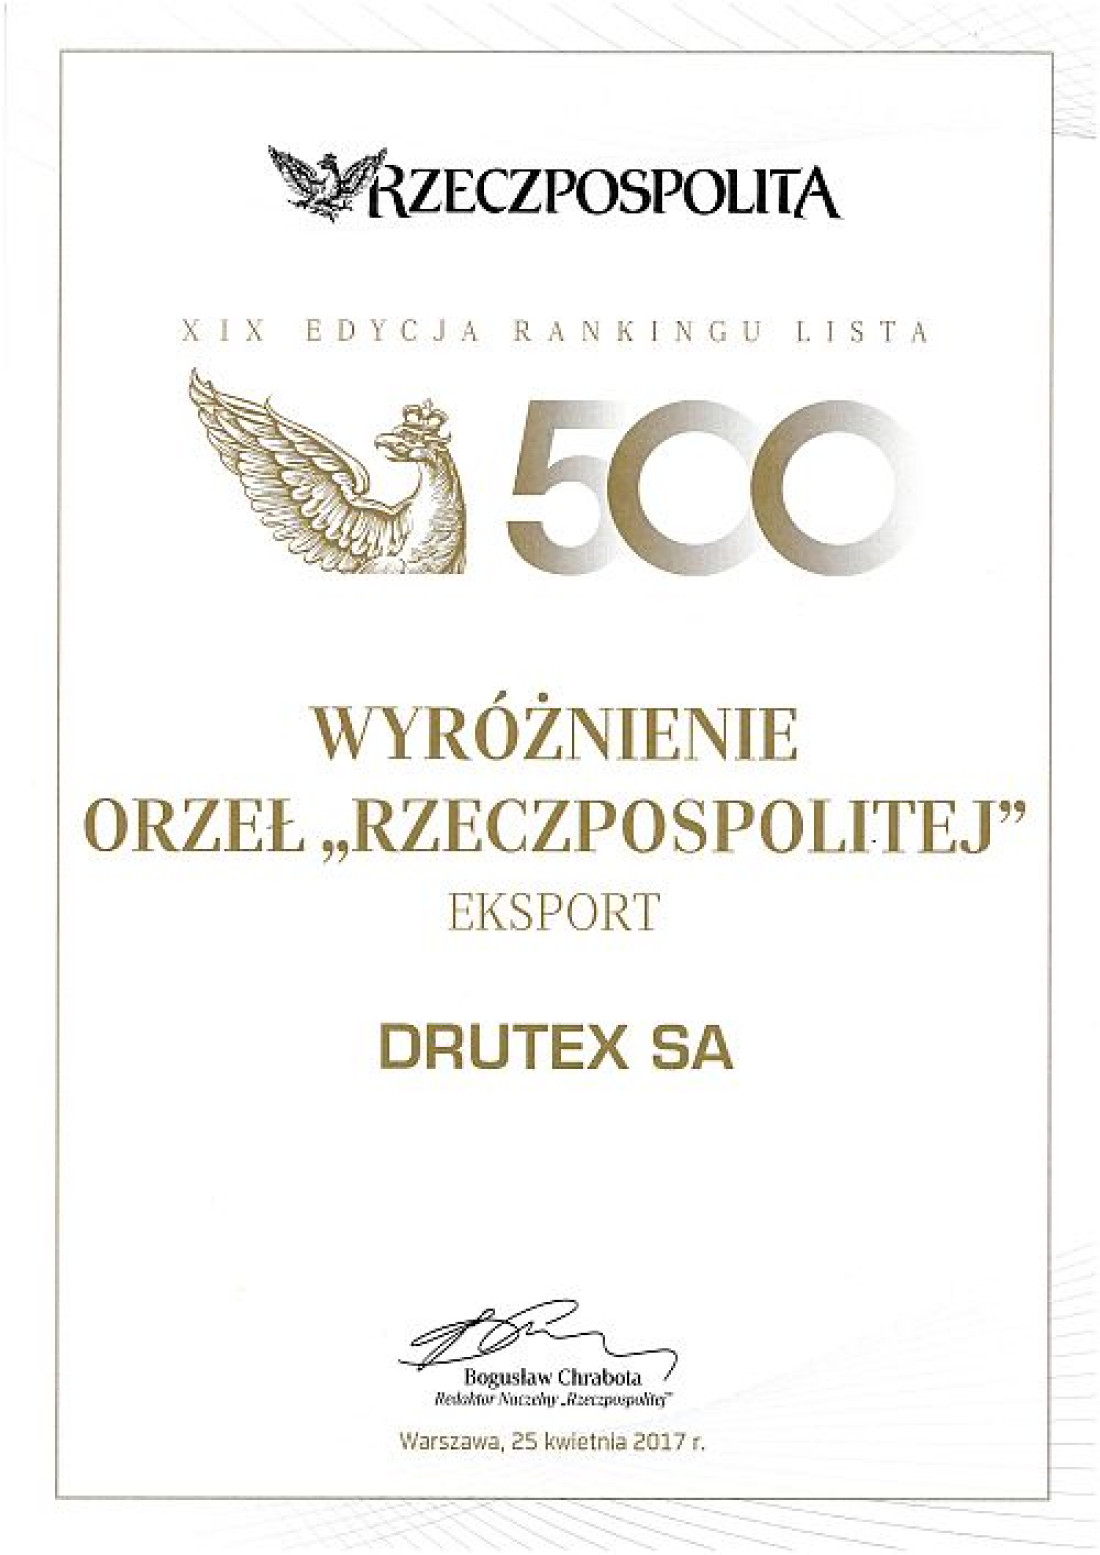 Drutex z wyróżnieniem za eksport i nominacją do nagrody Orła "Rzeczpospolitej"